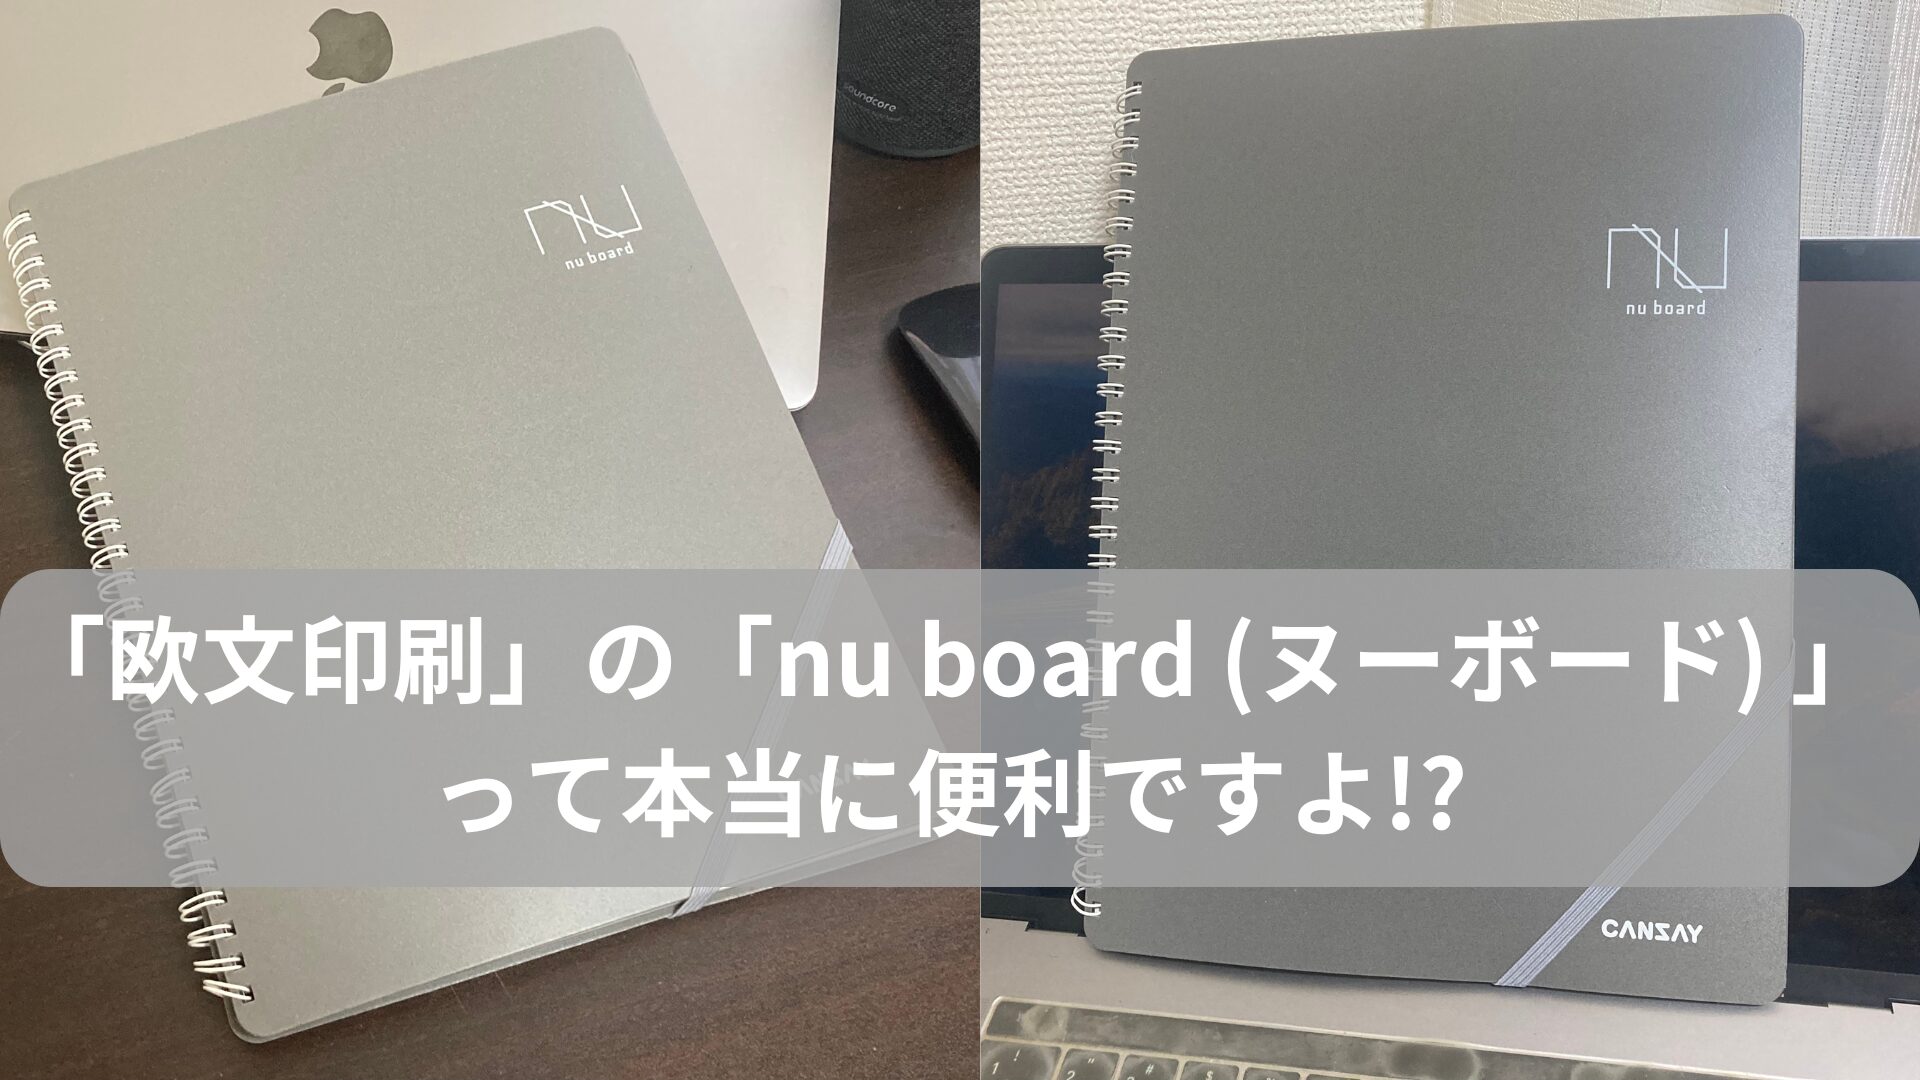 「欧文印刷」の「nu board (ヌーボード) 」って本当に便利ですよ!? 私はもう5年使い続けていますがメッチャ便利でおすすめです!?